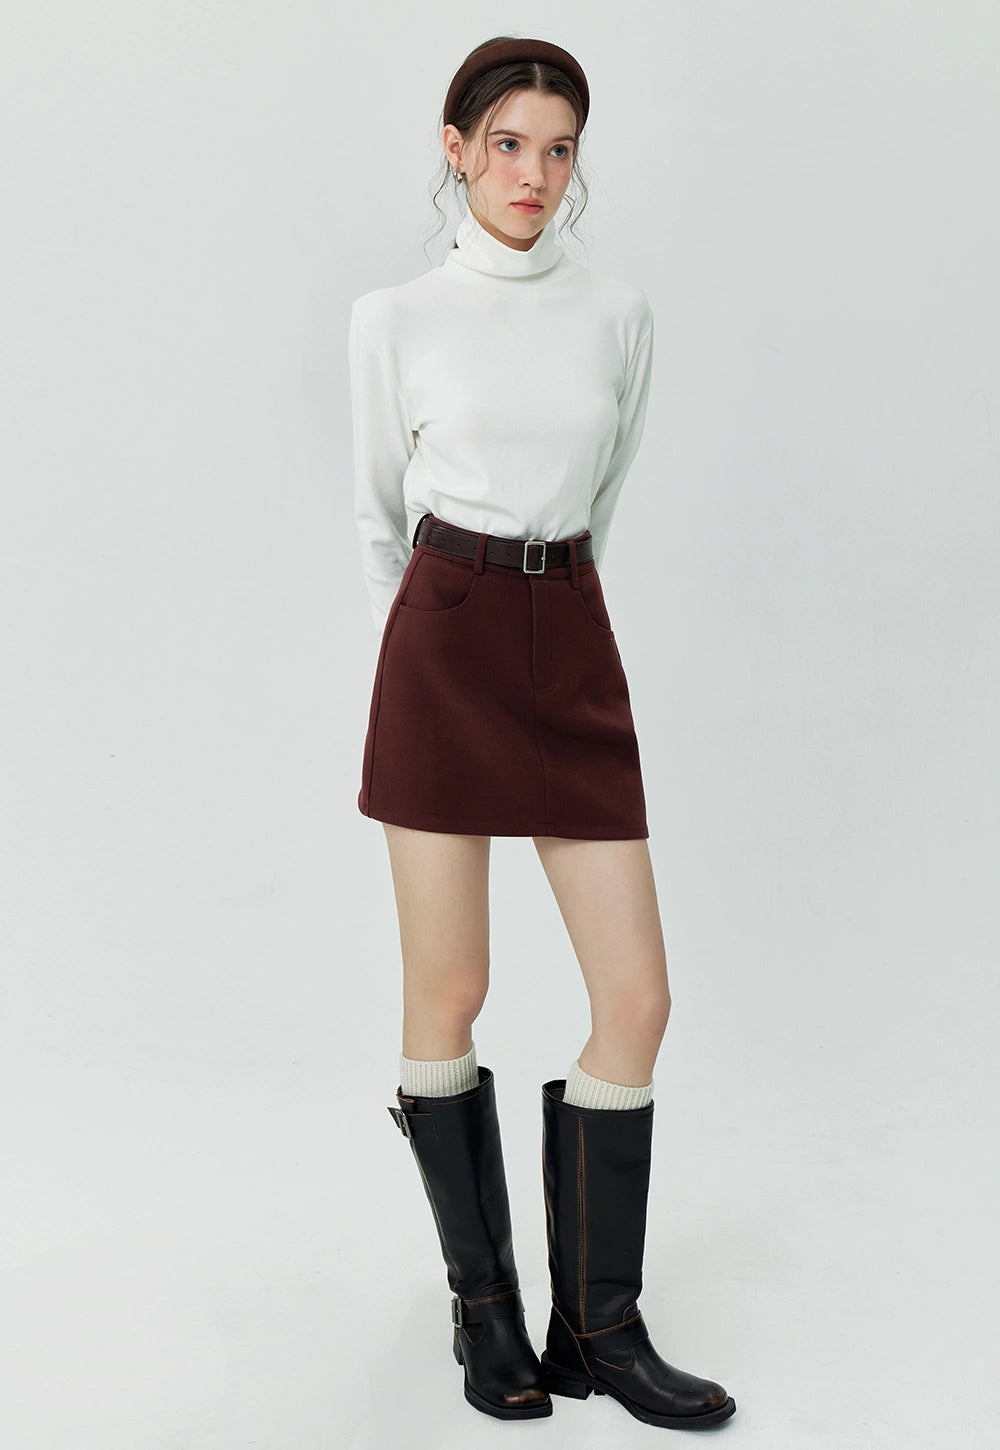 Women's A-Line Mini Skirt with Belt - High Waist Casual Skirt